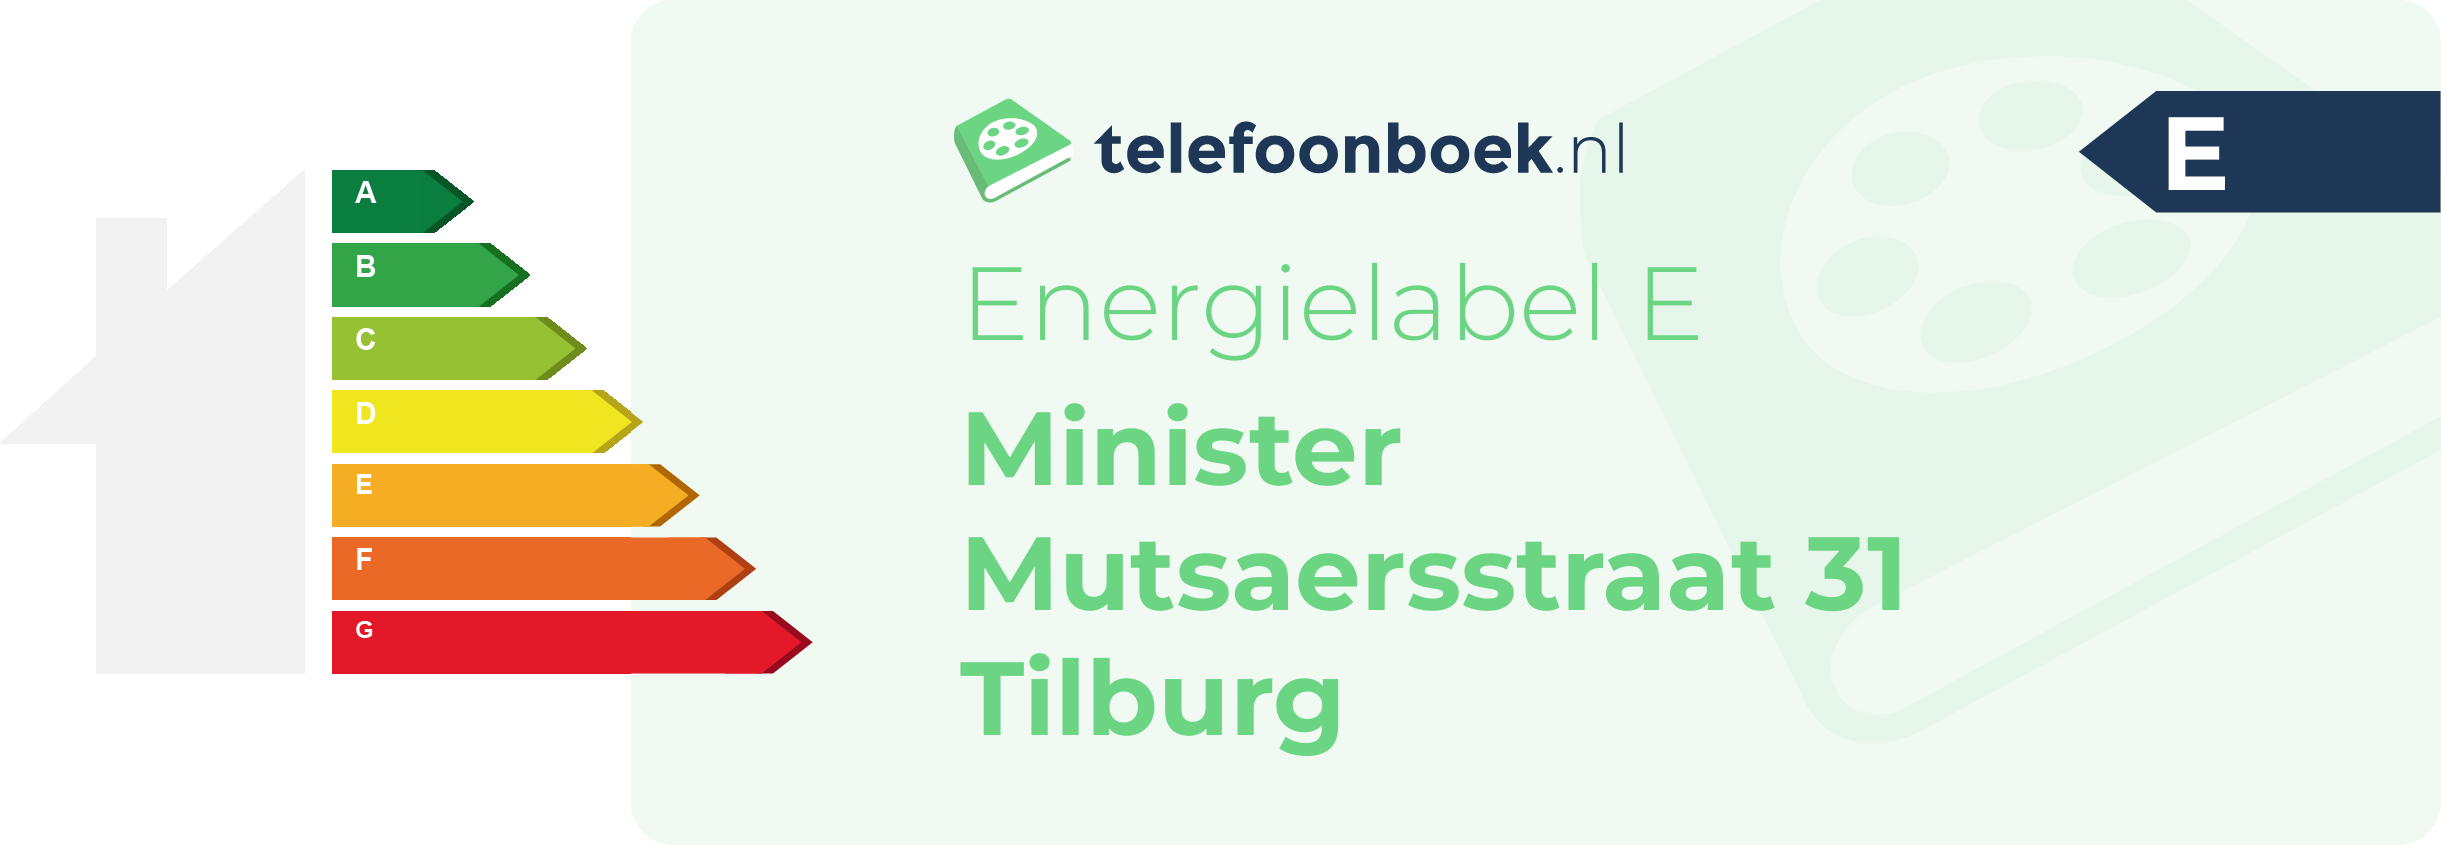 Energielabel Minister Mutsaersstraat 31 Tilburg